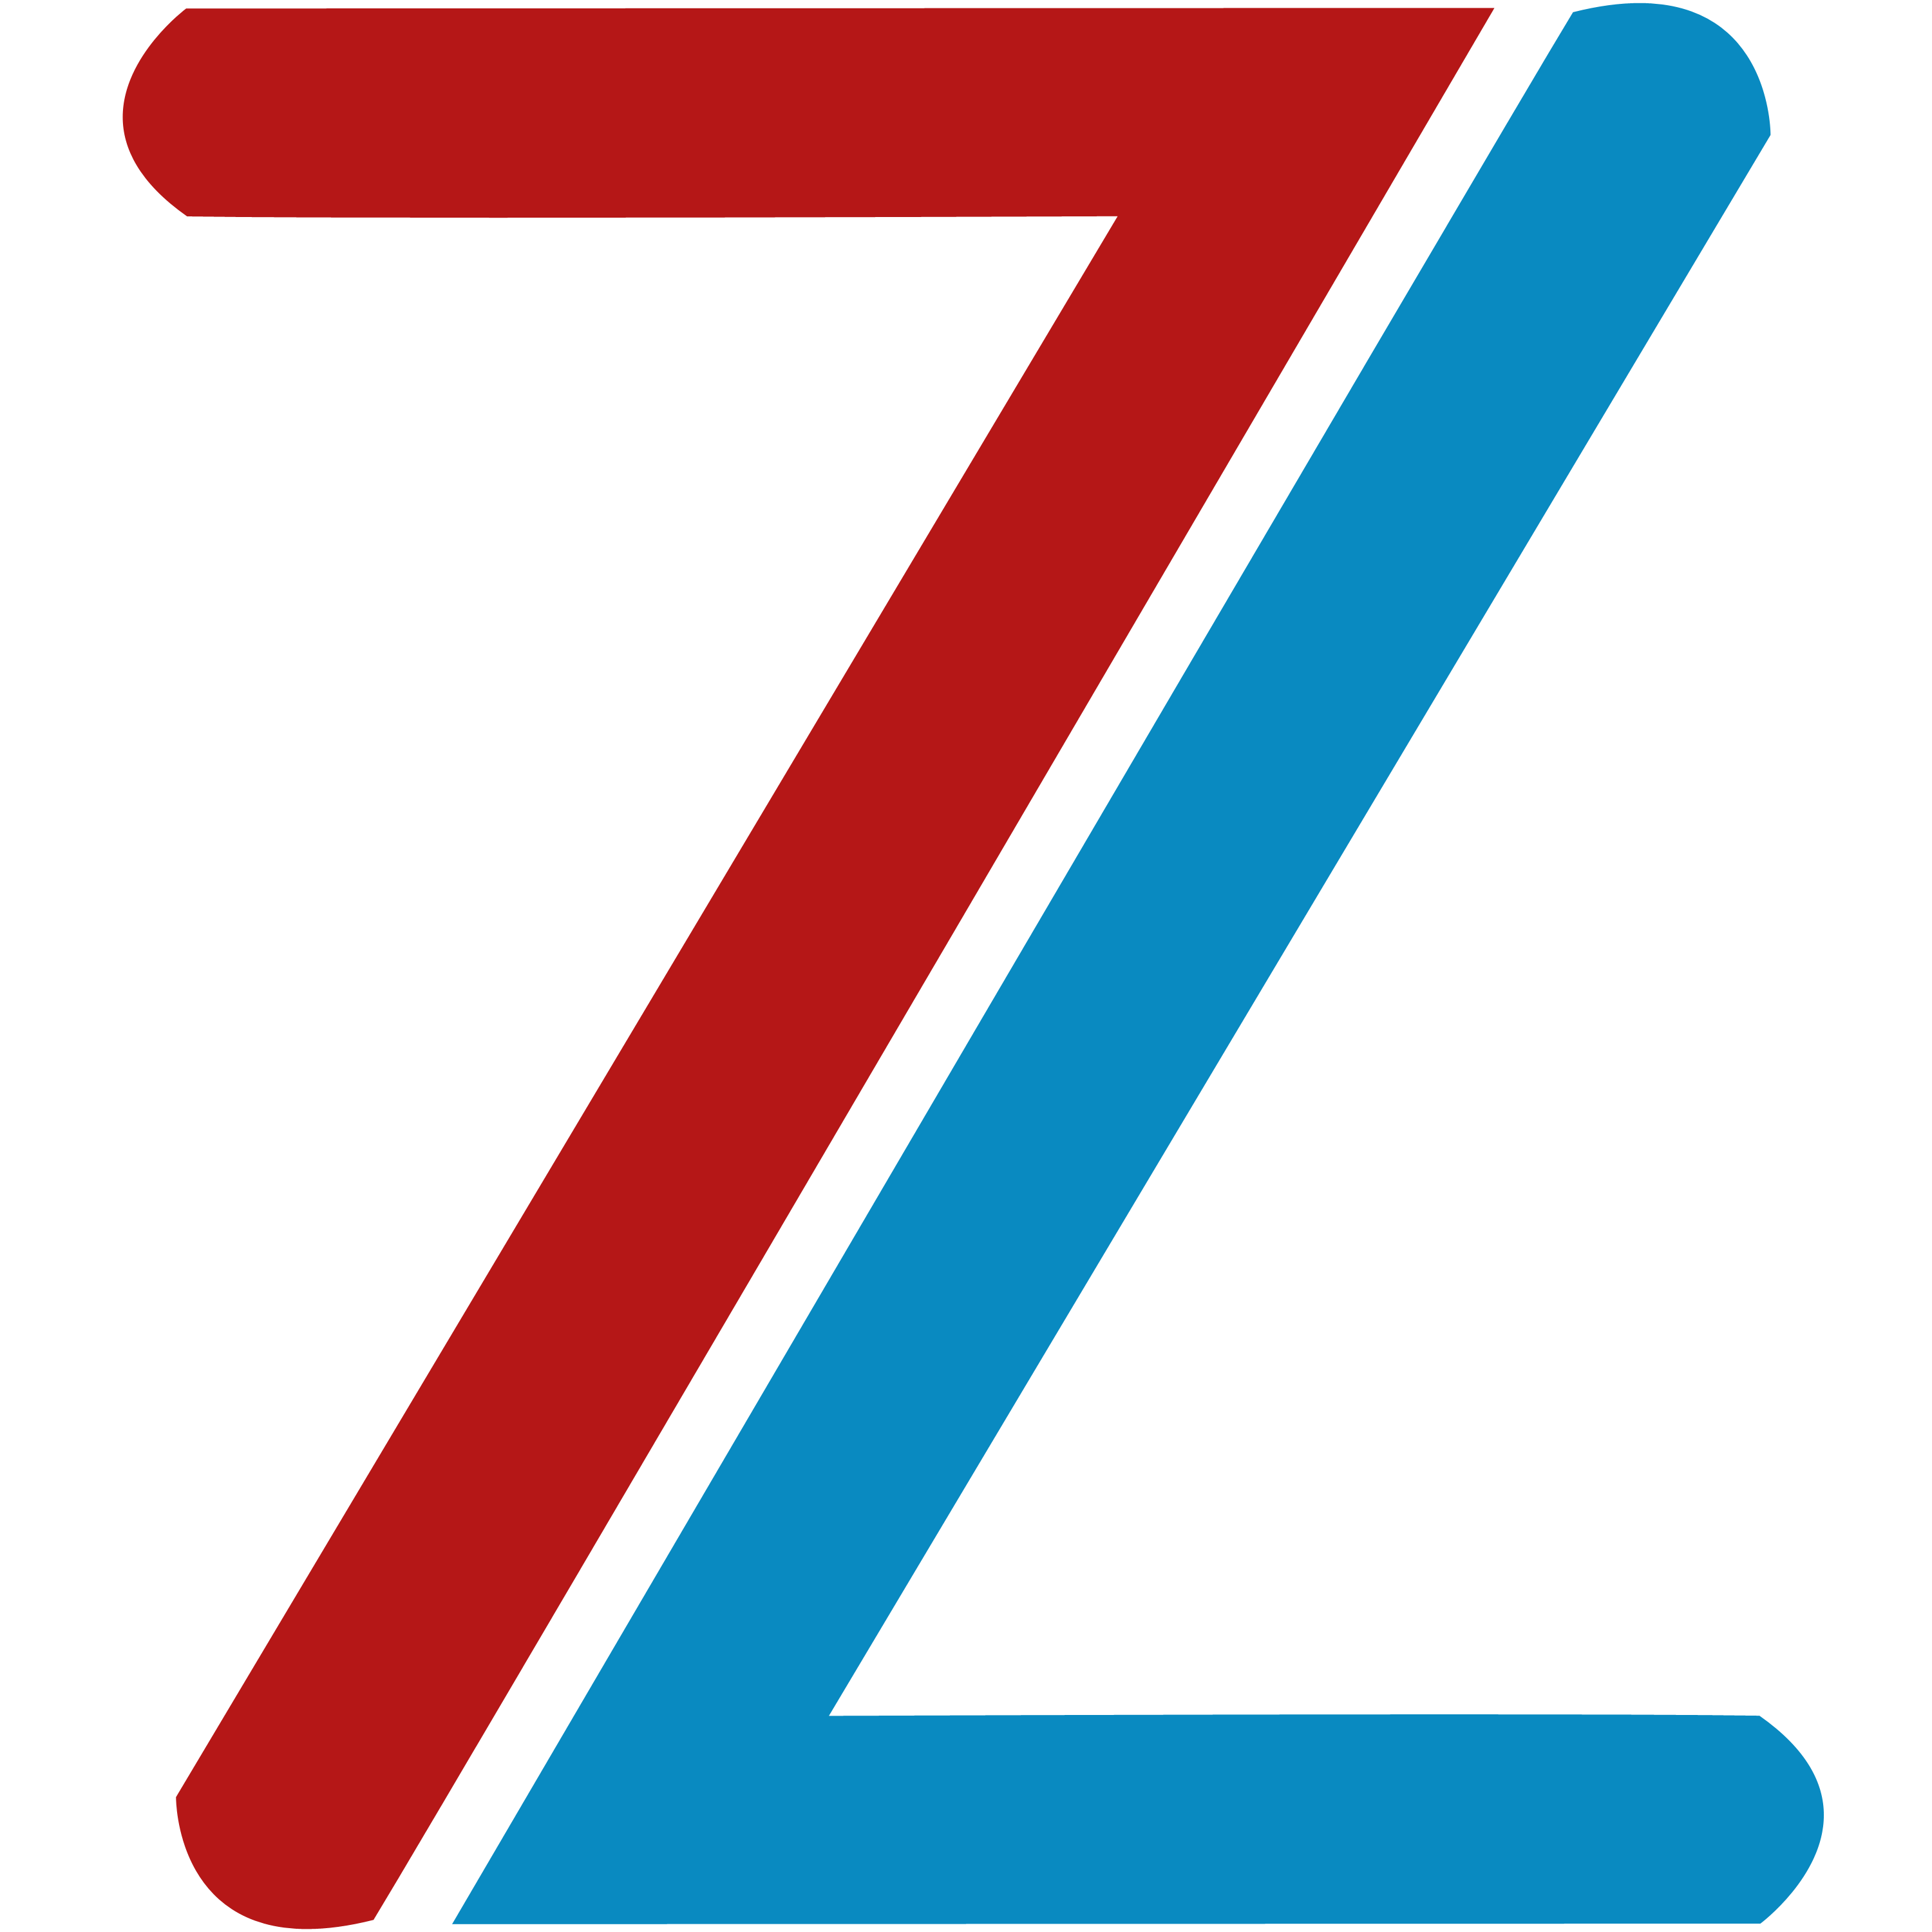 The logo of Zain Zulfiqar